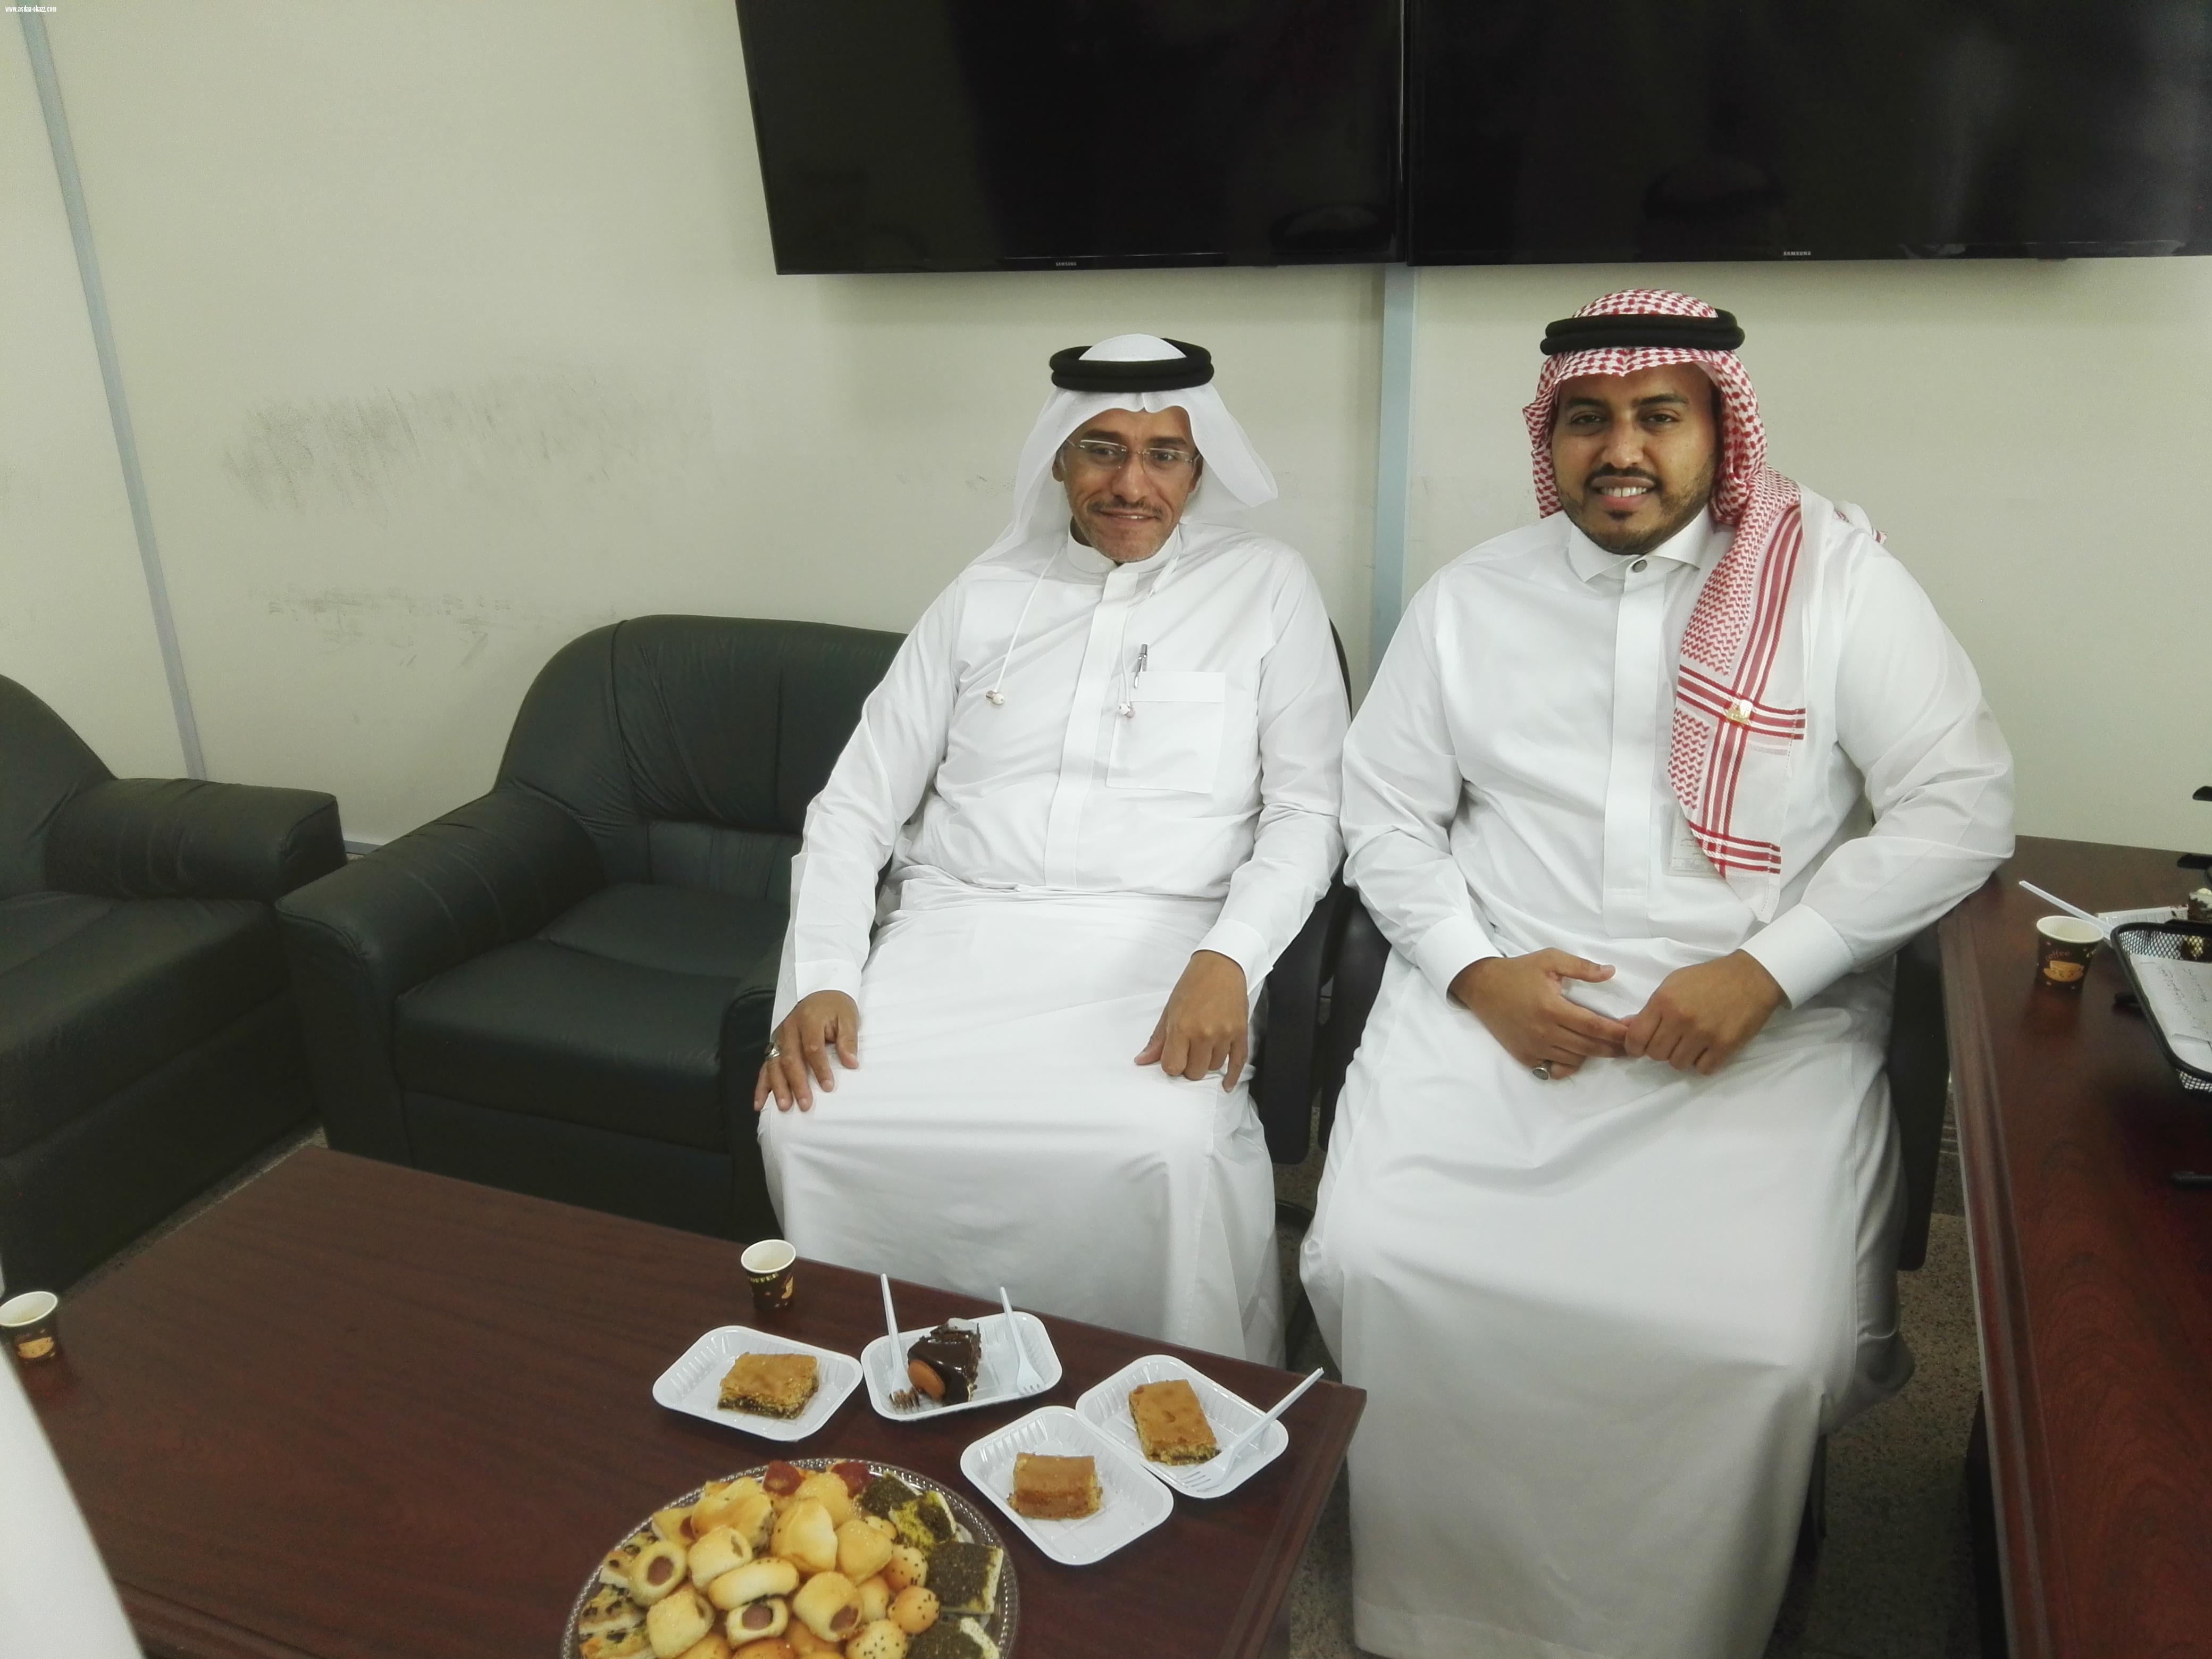 إحتفال موظفوا قسم صيانة المرافق والخدمات العامه بجامعة جدة بتجديد تكليف م. محمد معدلي مديرا للإدارة